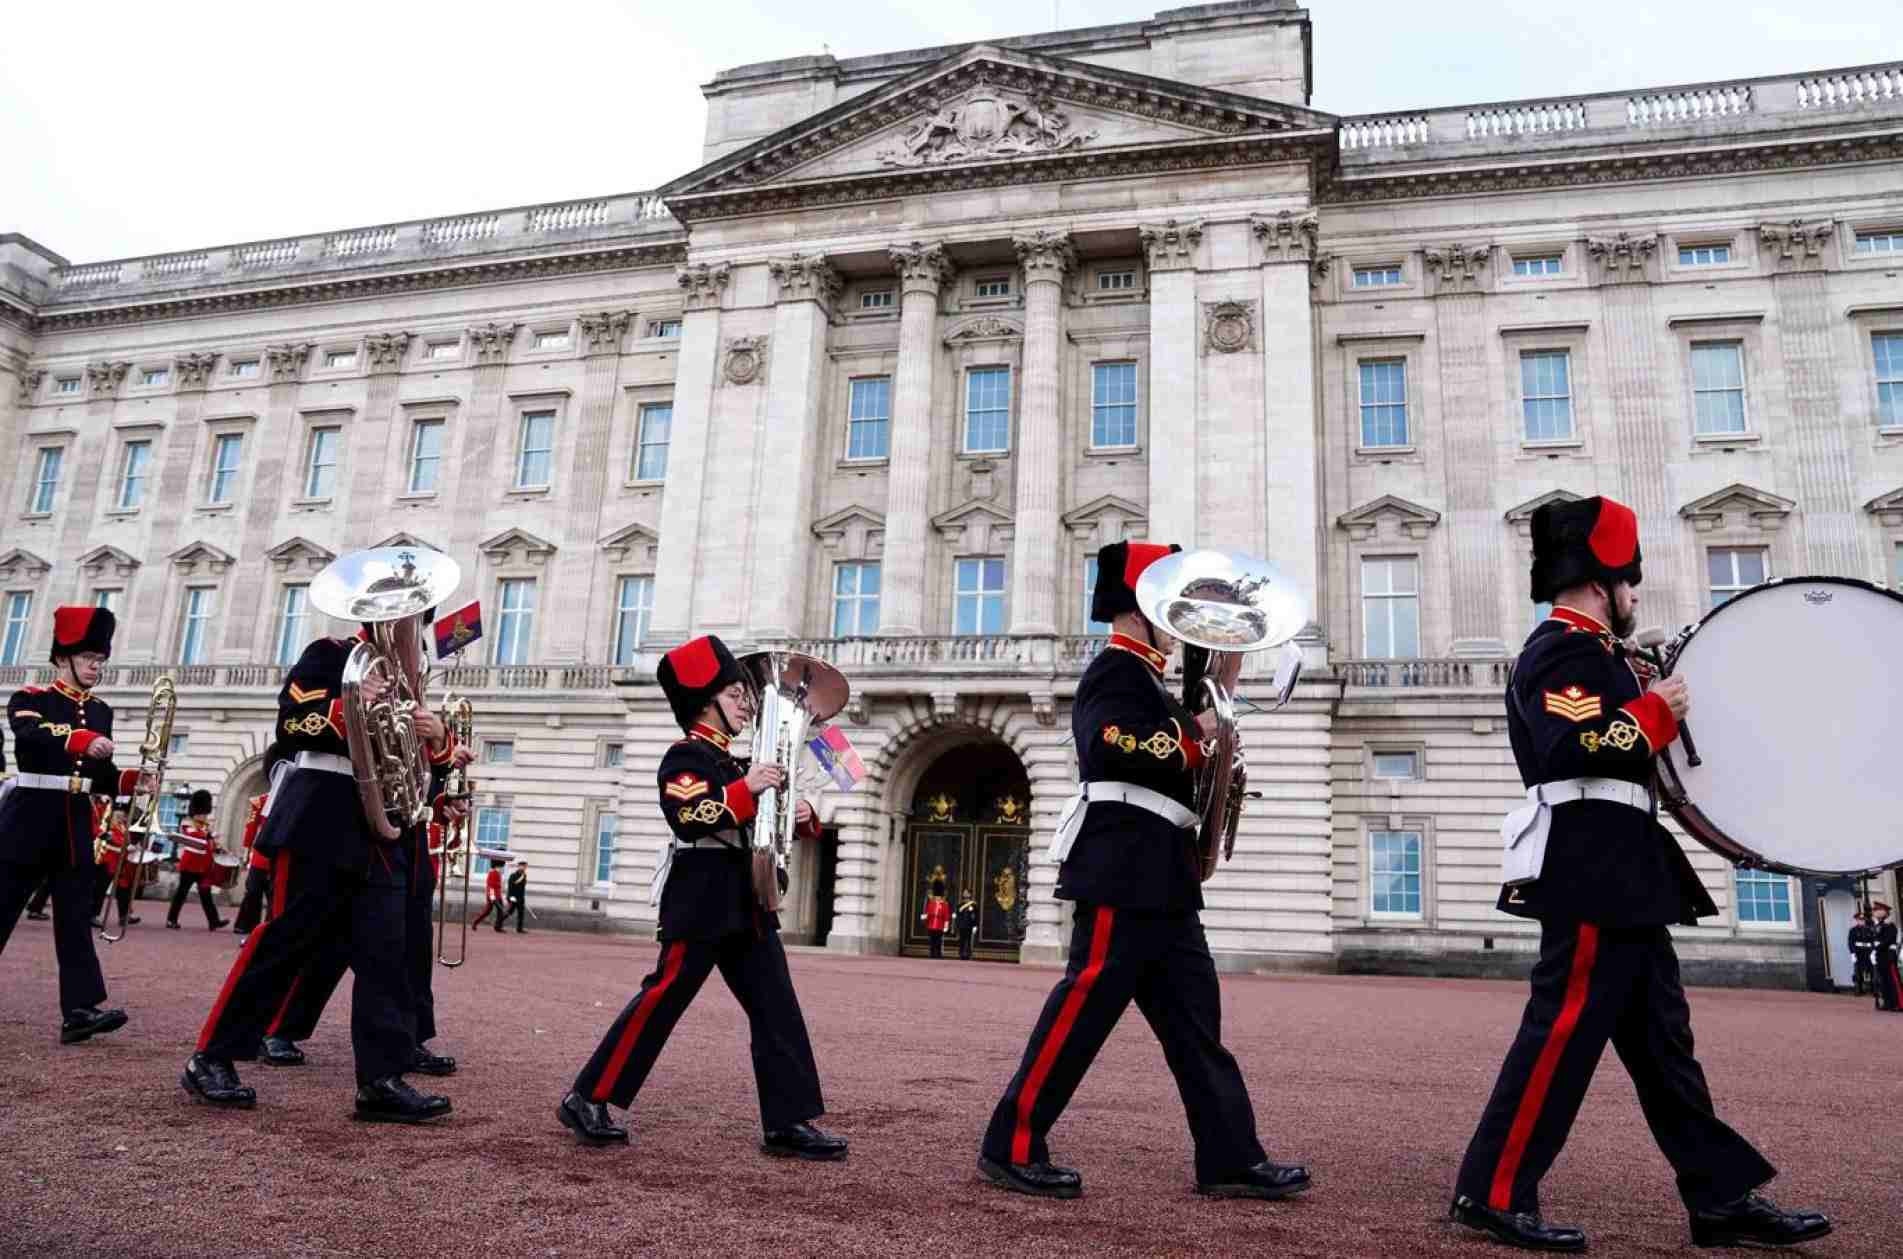 Troca da guarda em frente ao Palácio de Buckingham, em Londres: as novas regras passaram a vigorar ontem (11).